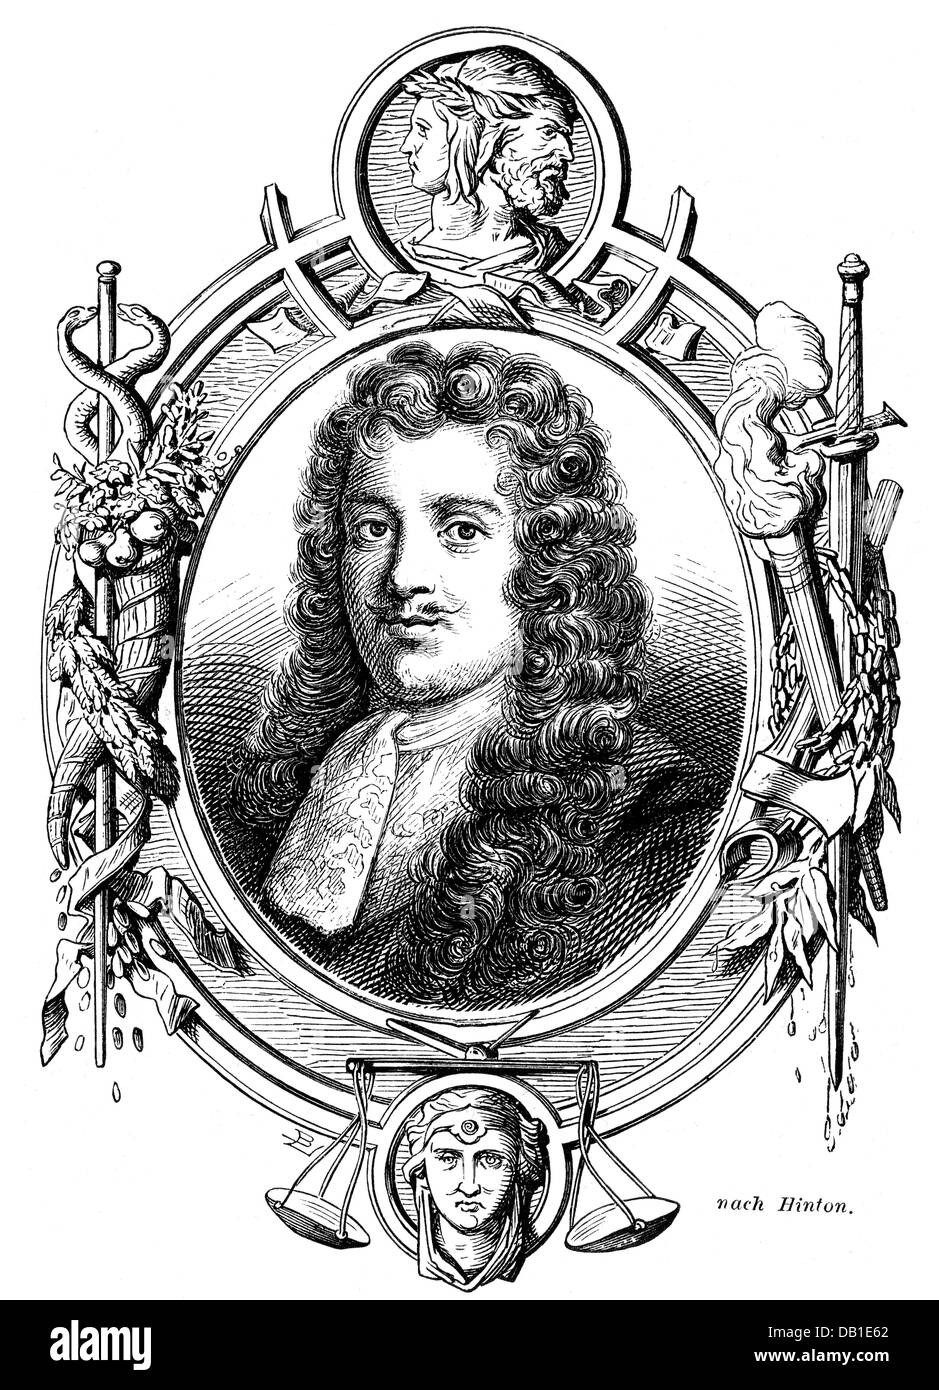 Savile, George, 1st Marquess of Halifax, 11.11.1633 - 5.4.1695, englischer Politiker und Autor/Schriftsteller, Porträt, Holzgravur, 19. Jahrhundert, Stockfoto